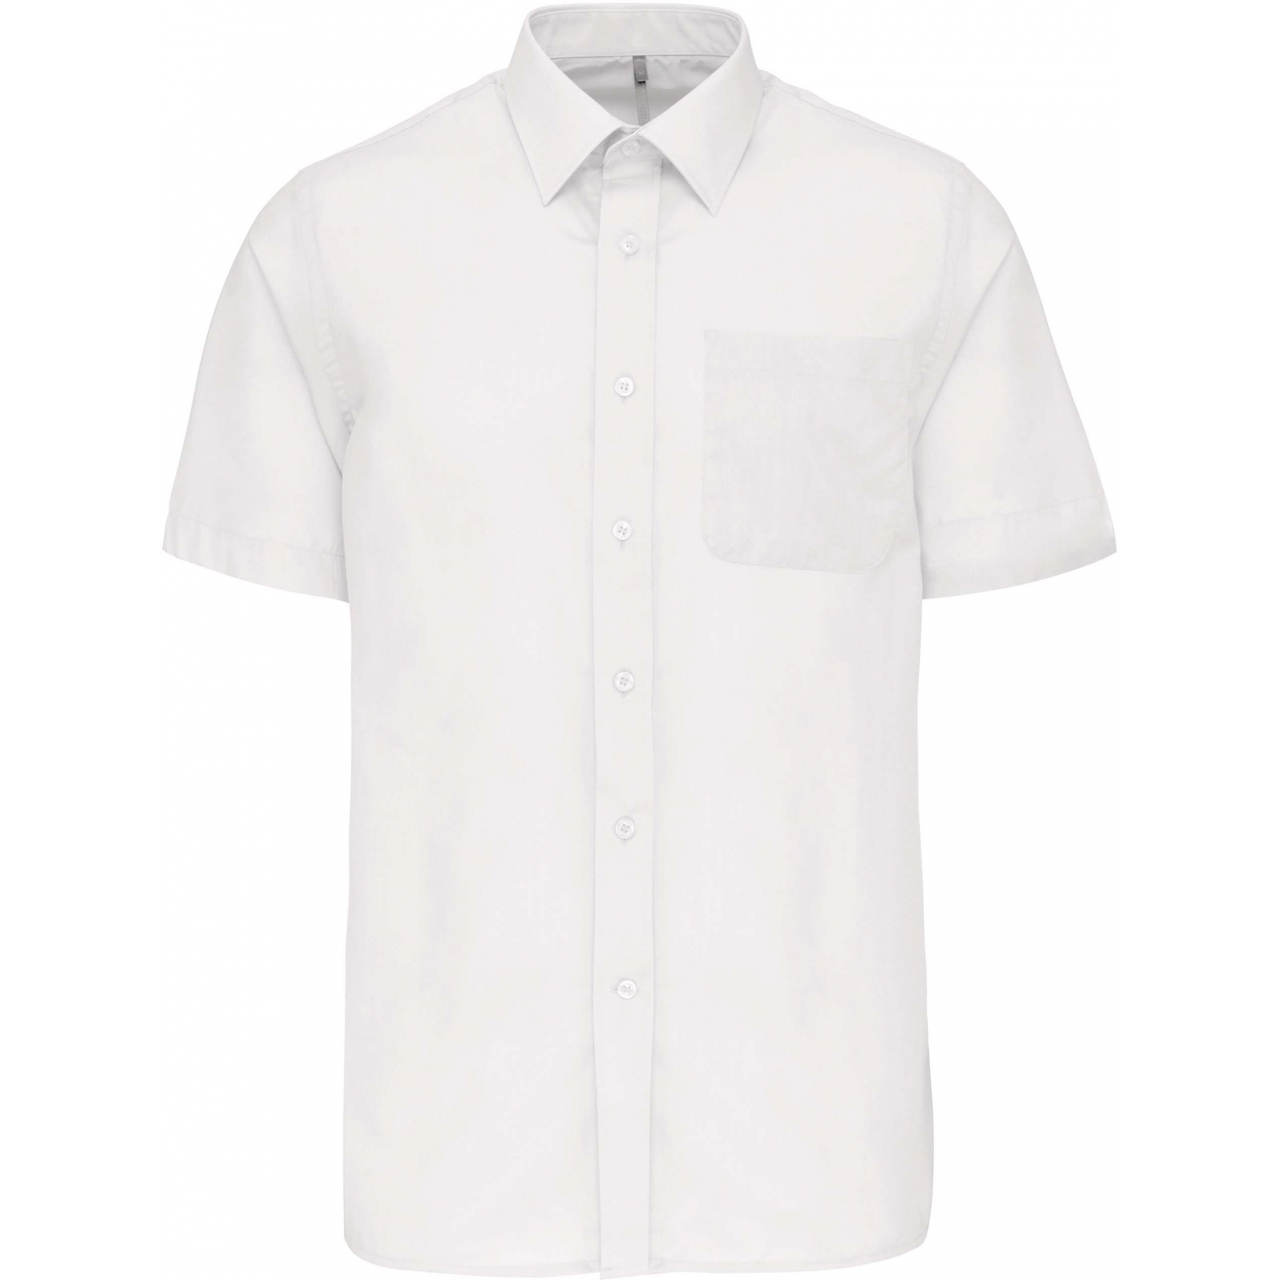 Pánská košile s krátkým rukávem Kariban ACE - bílá, L